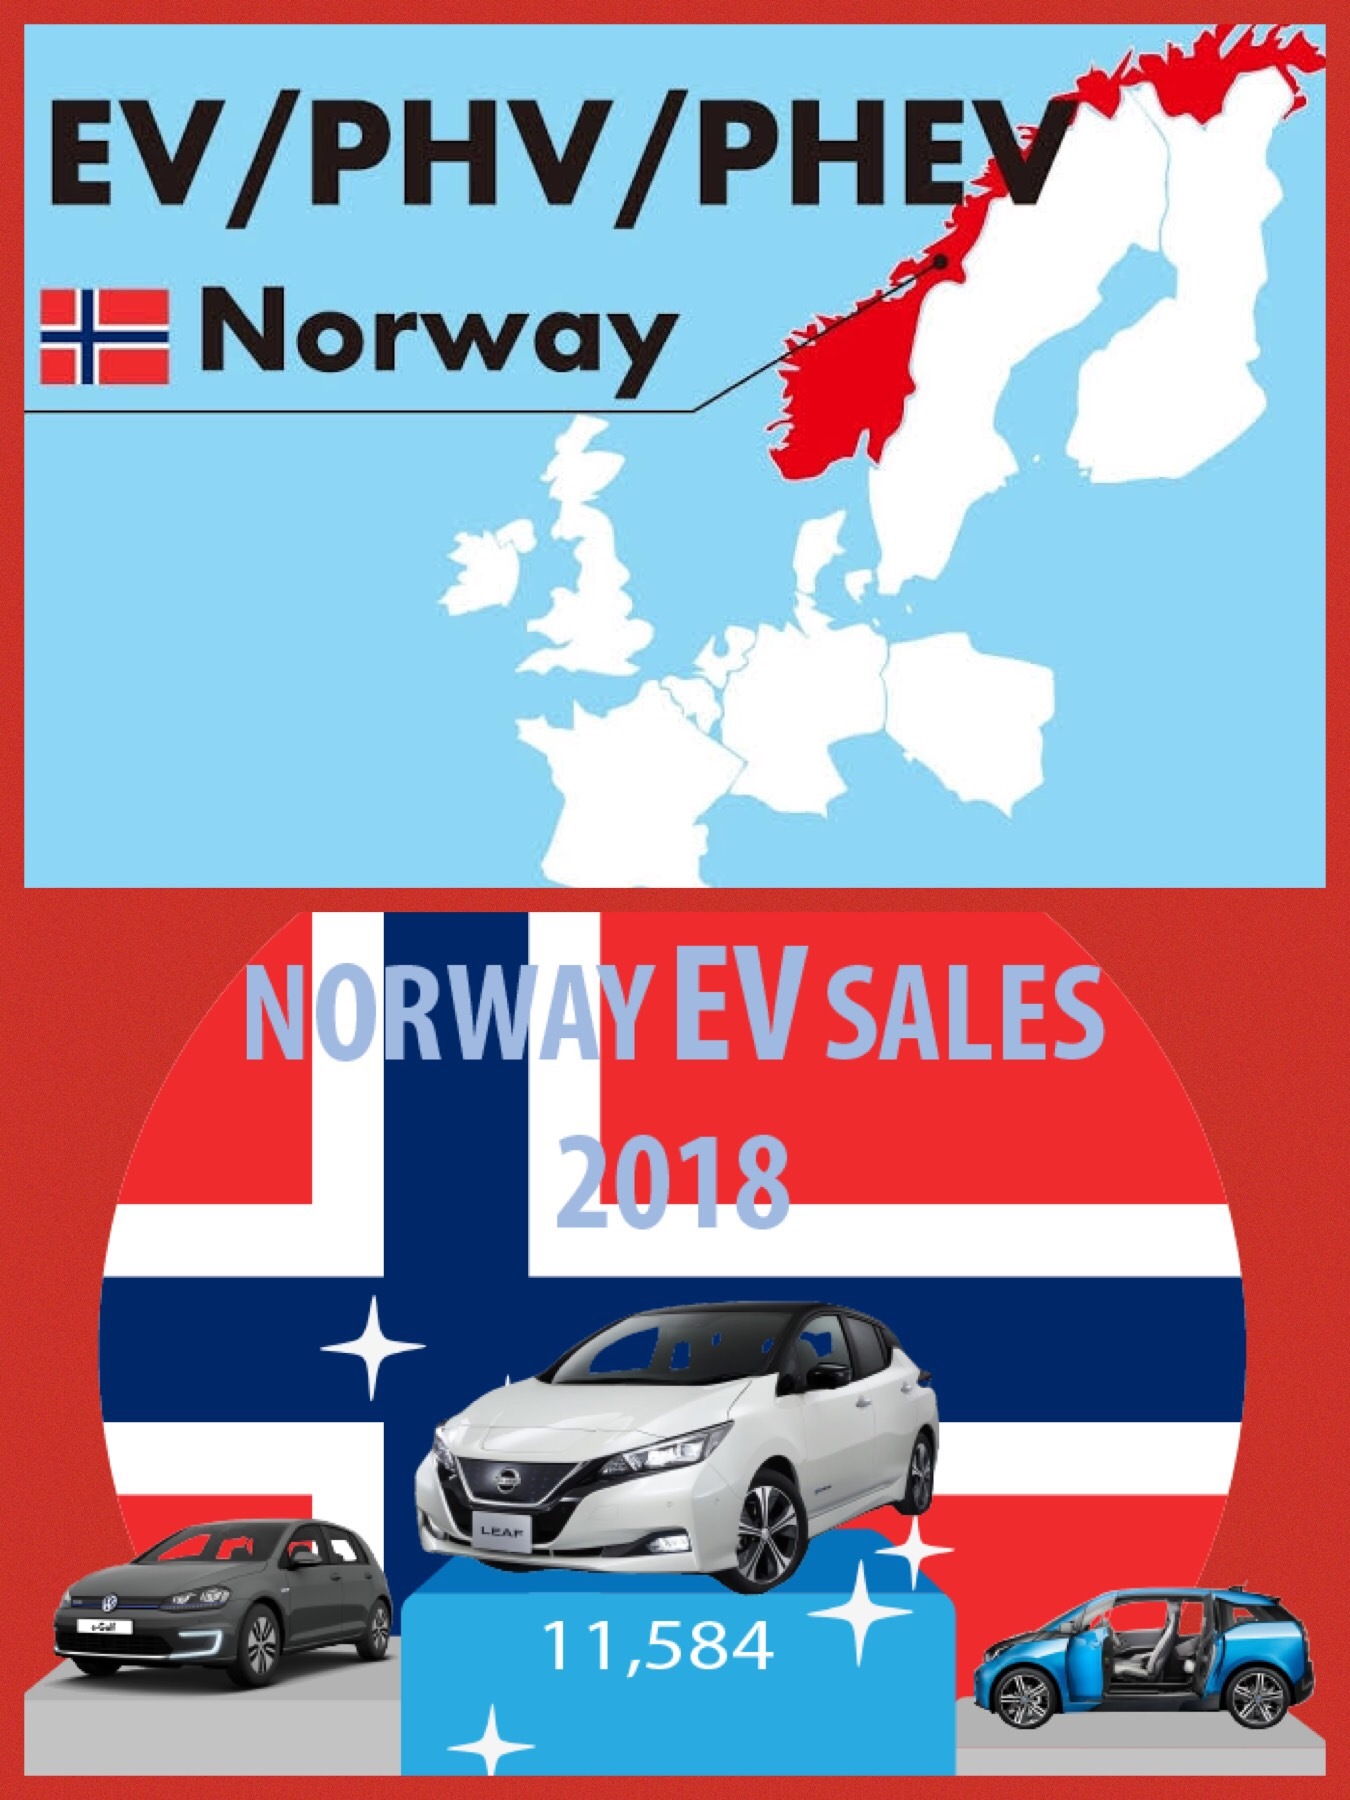 世界で一番の電動車両先進国 ノルウェー